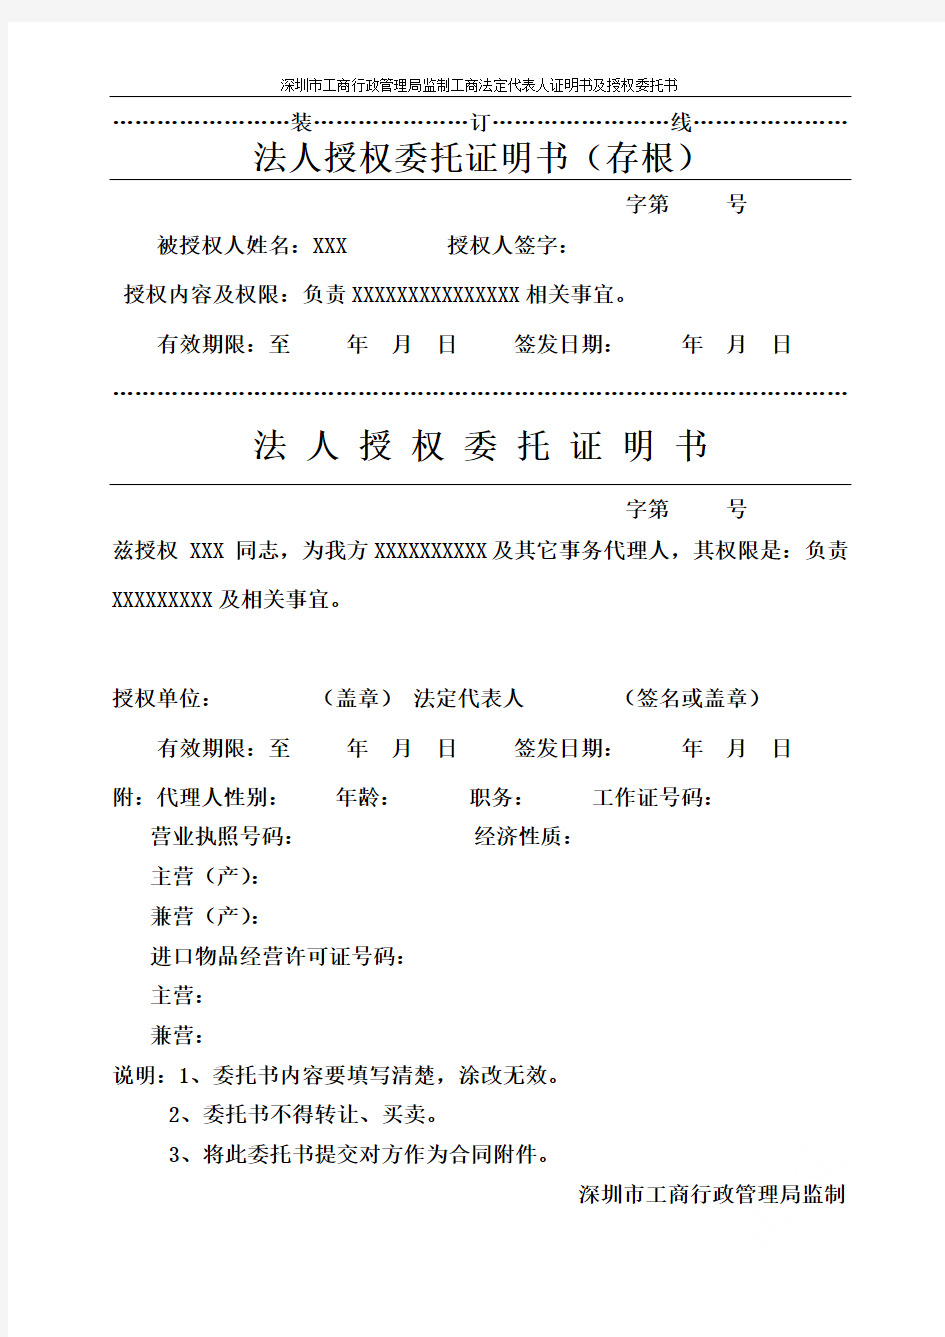 深圳市工商行政管理局监制工商法定代表人证明书及授权委托书